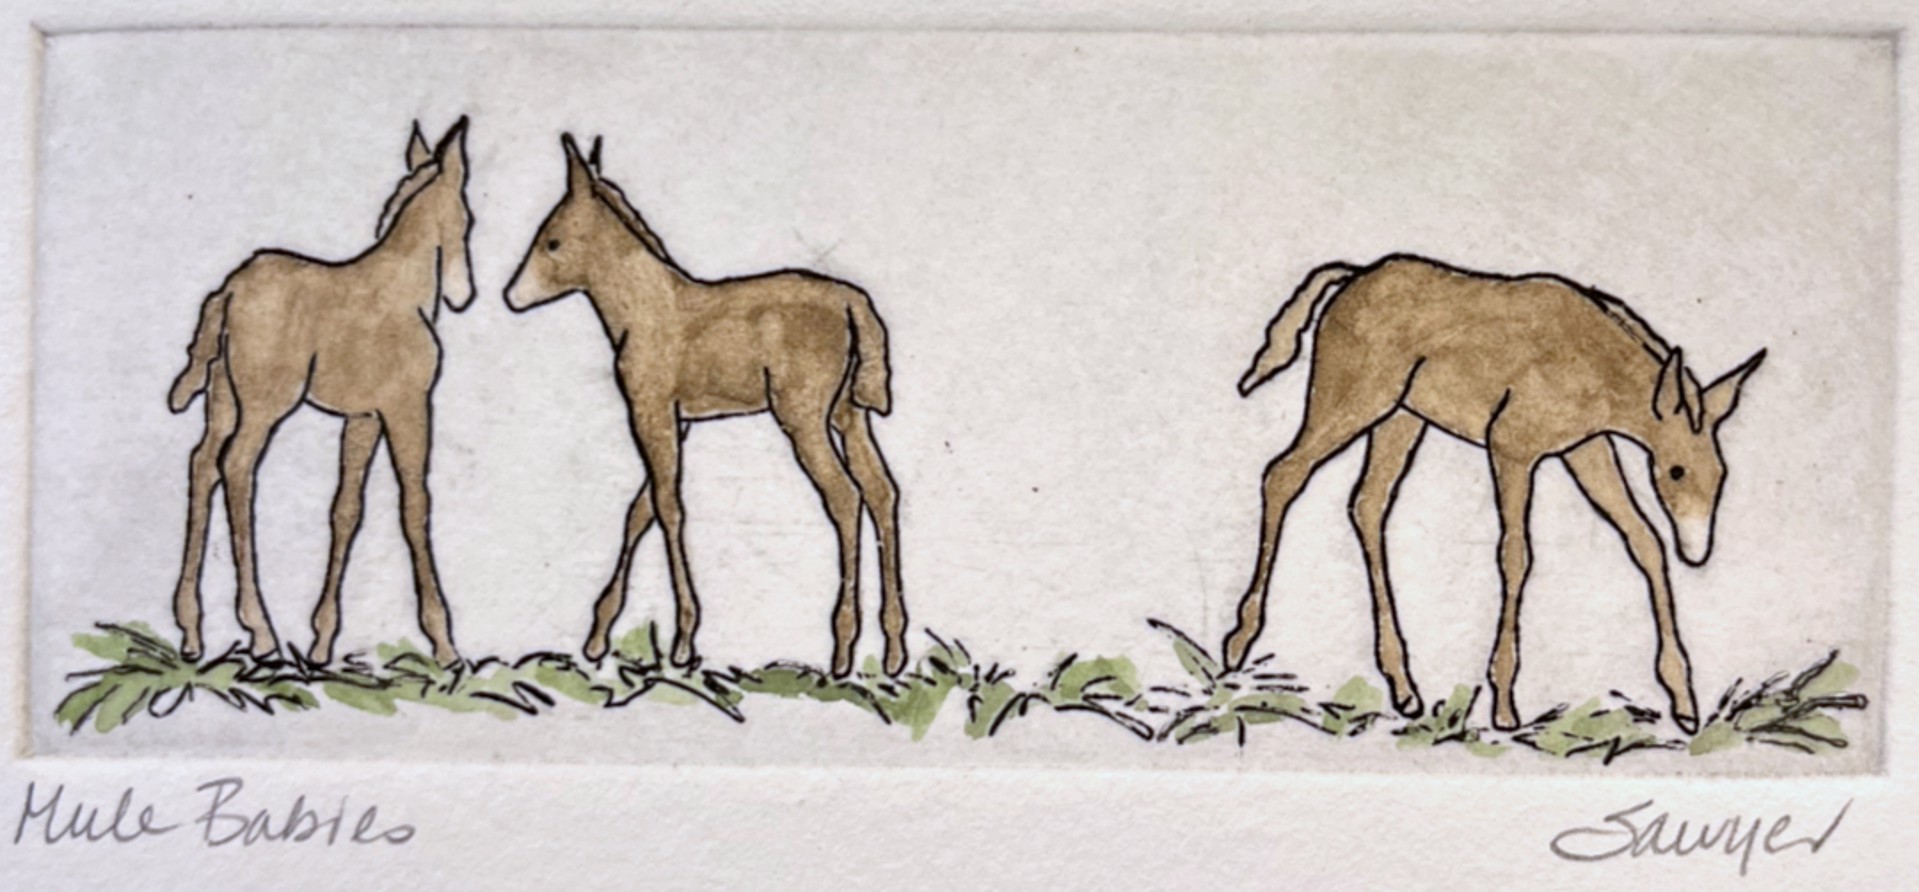 Mule Babies (unframed) by Anne Sawyer